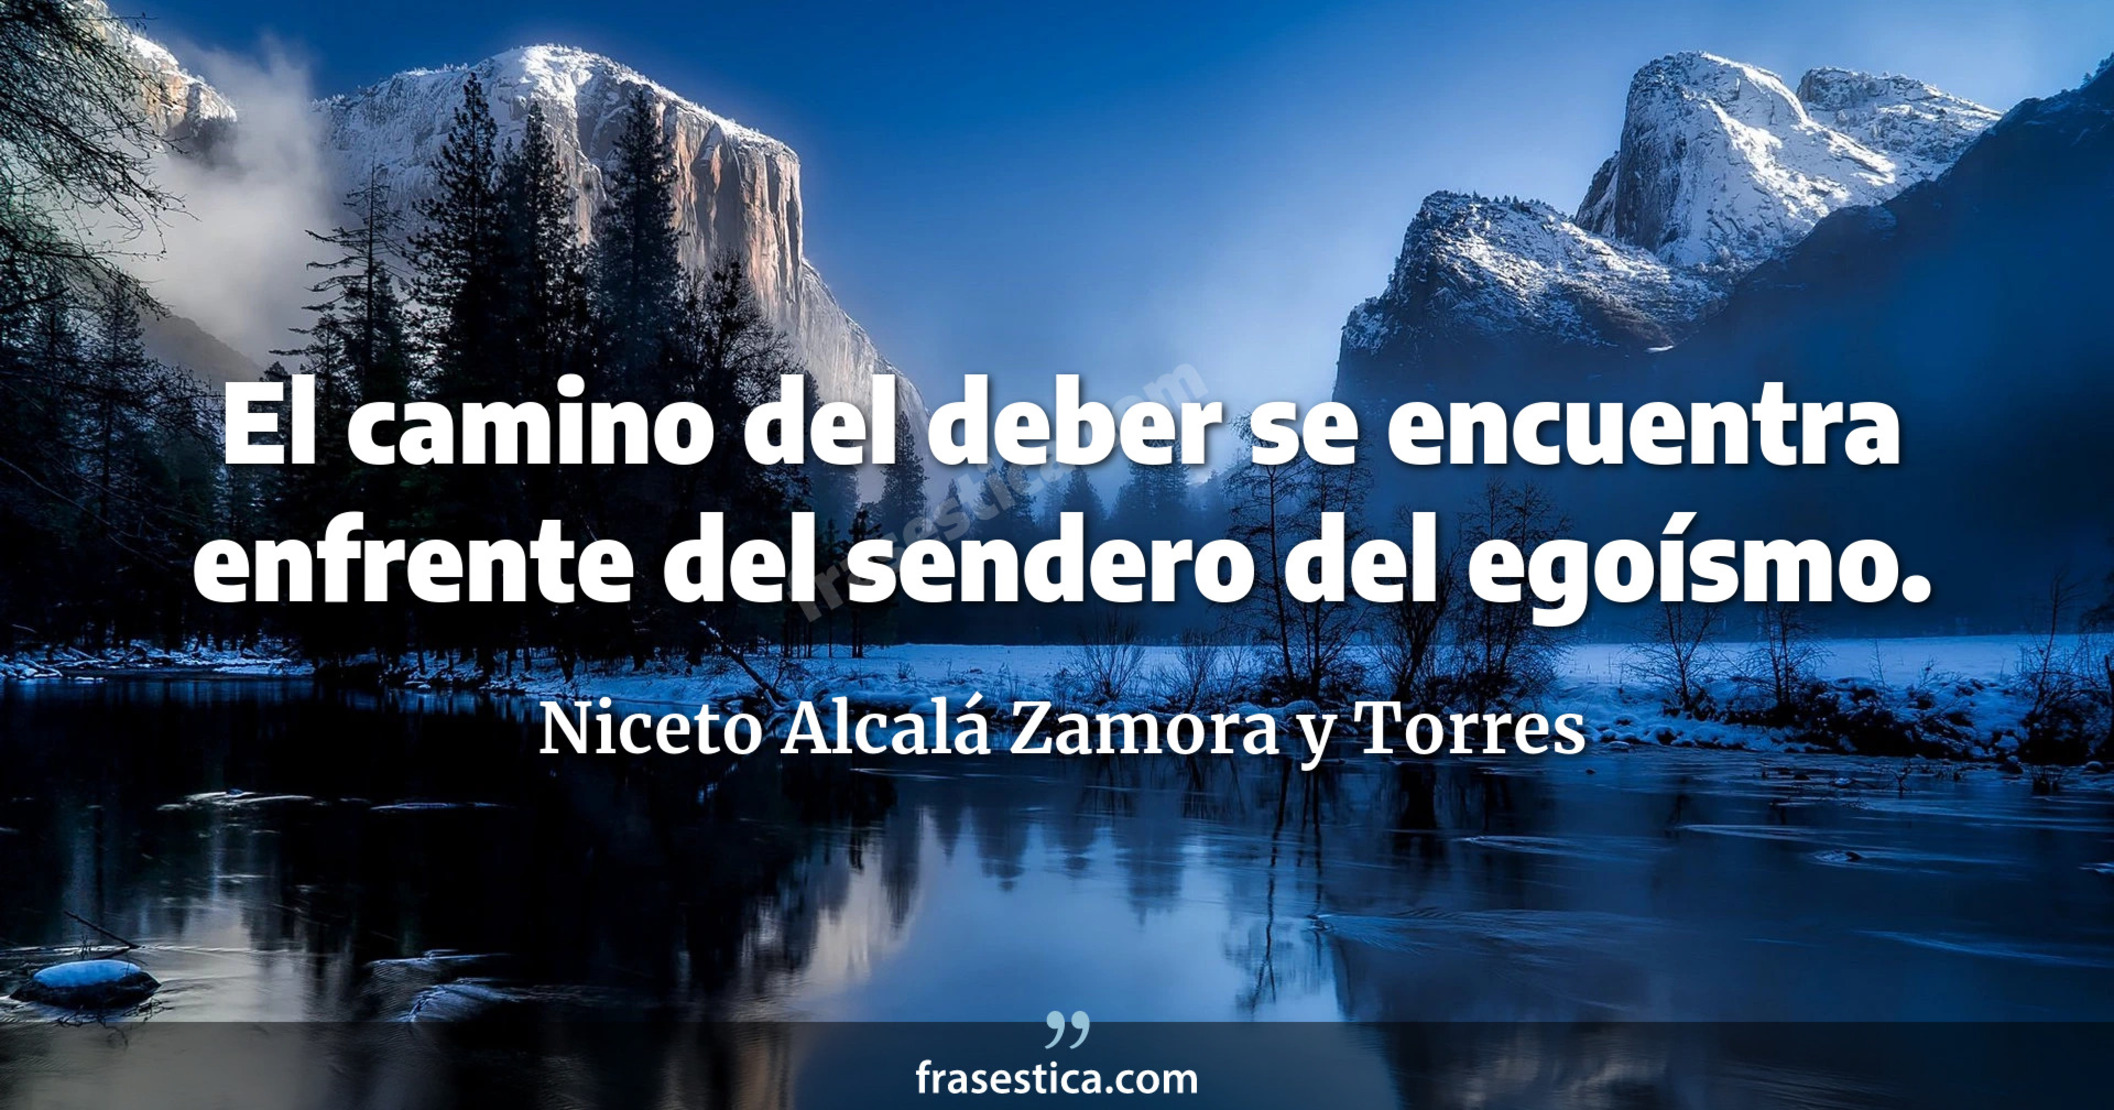 El camino del deber se encuentra enfrente del sendero del egoísmo. - Niceto Alcalá Zamora y Torres